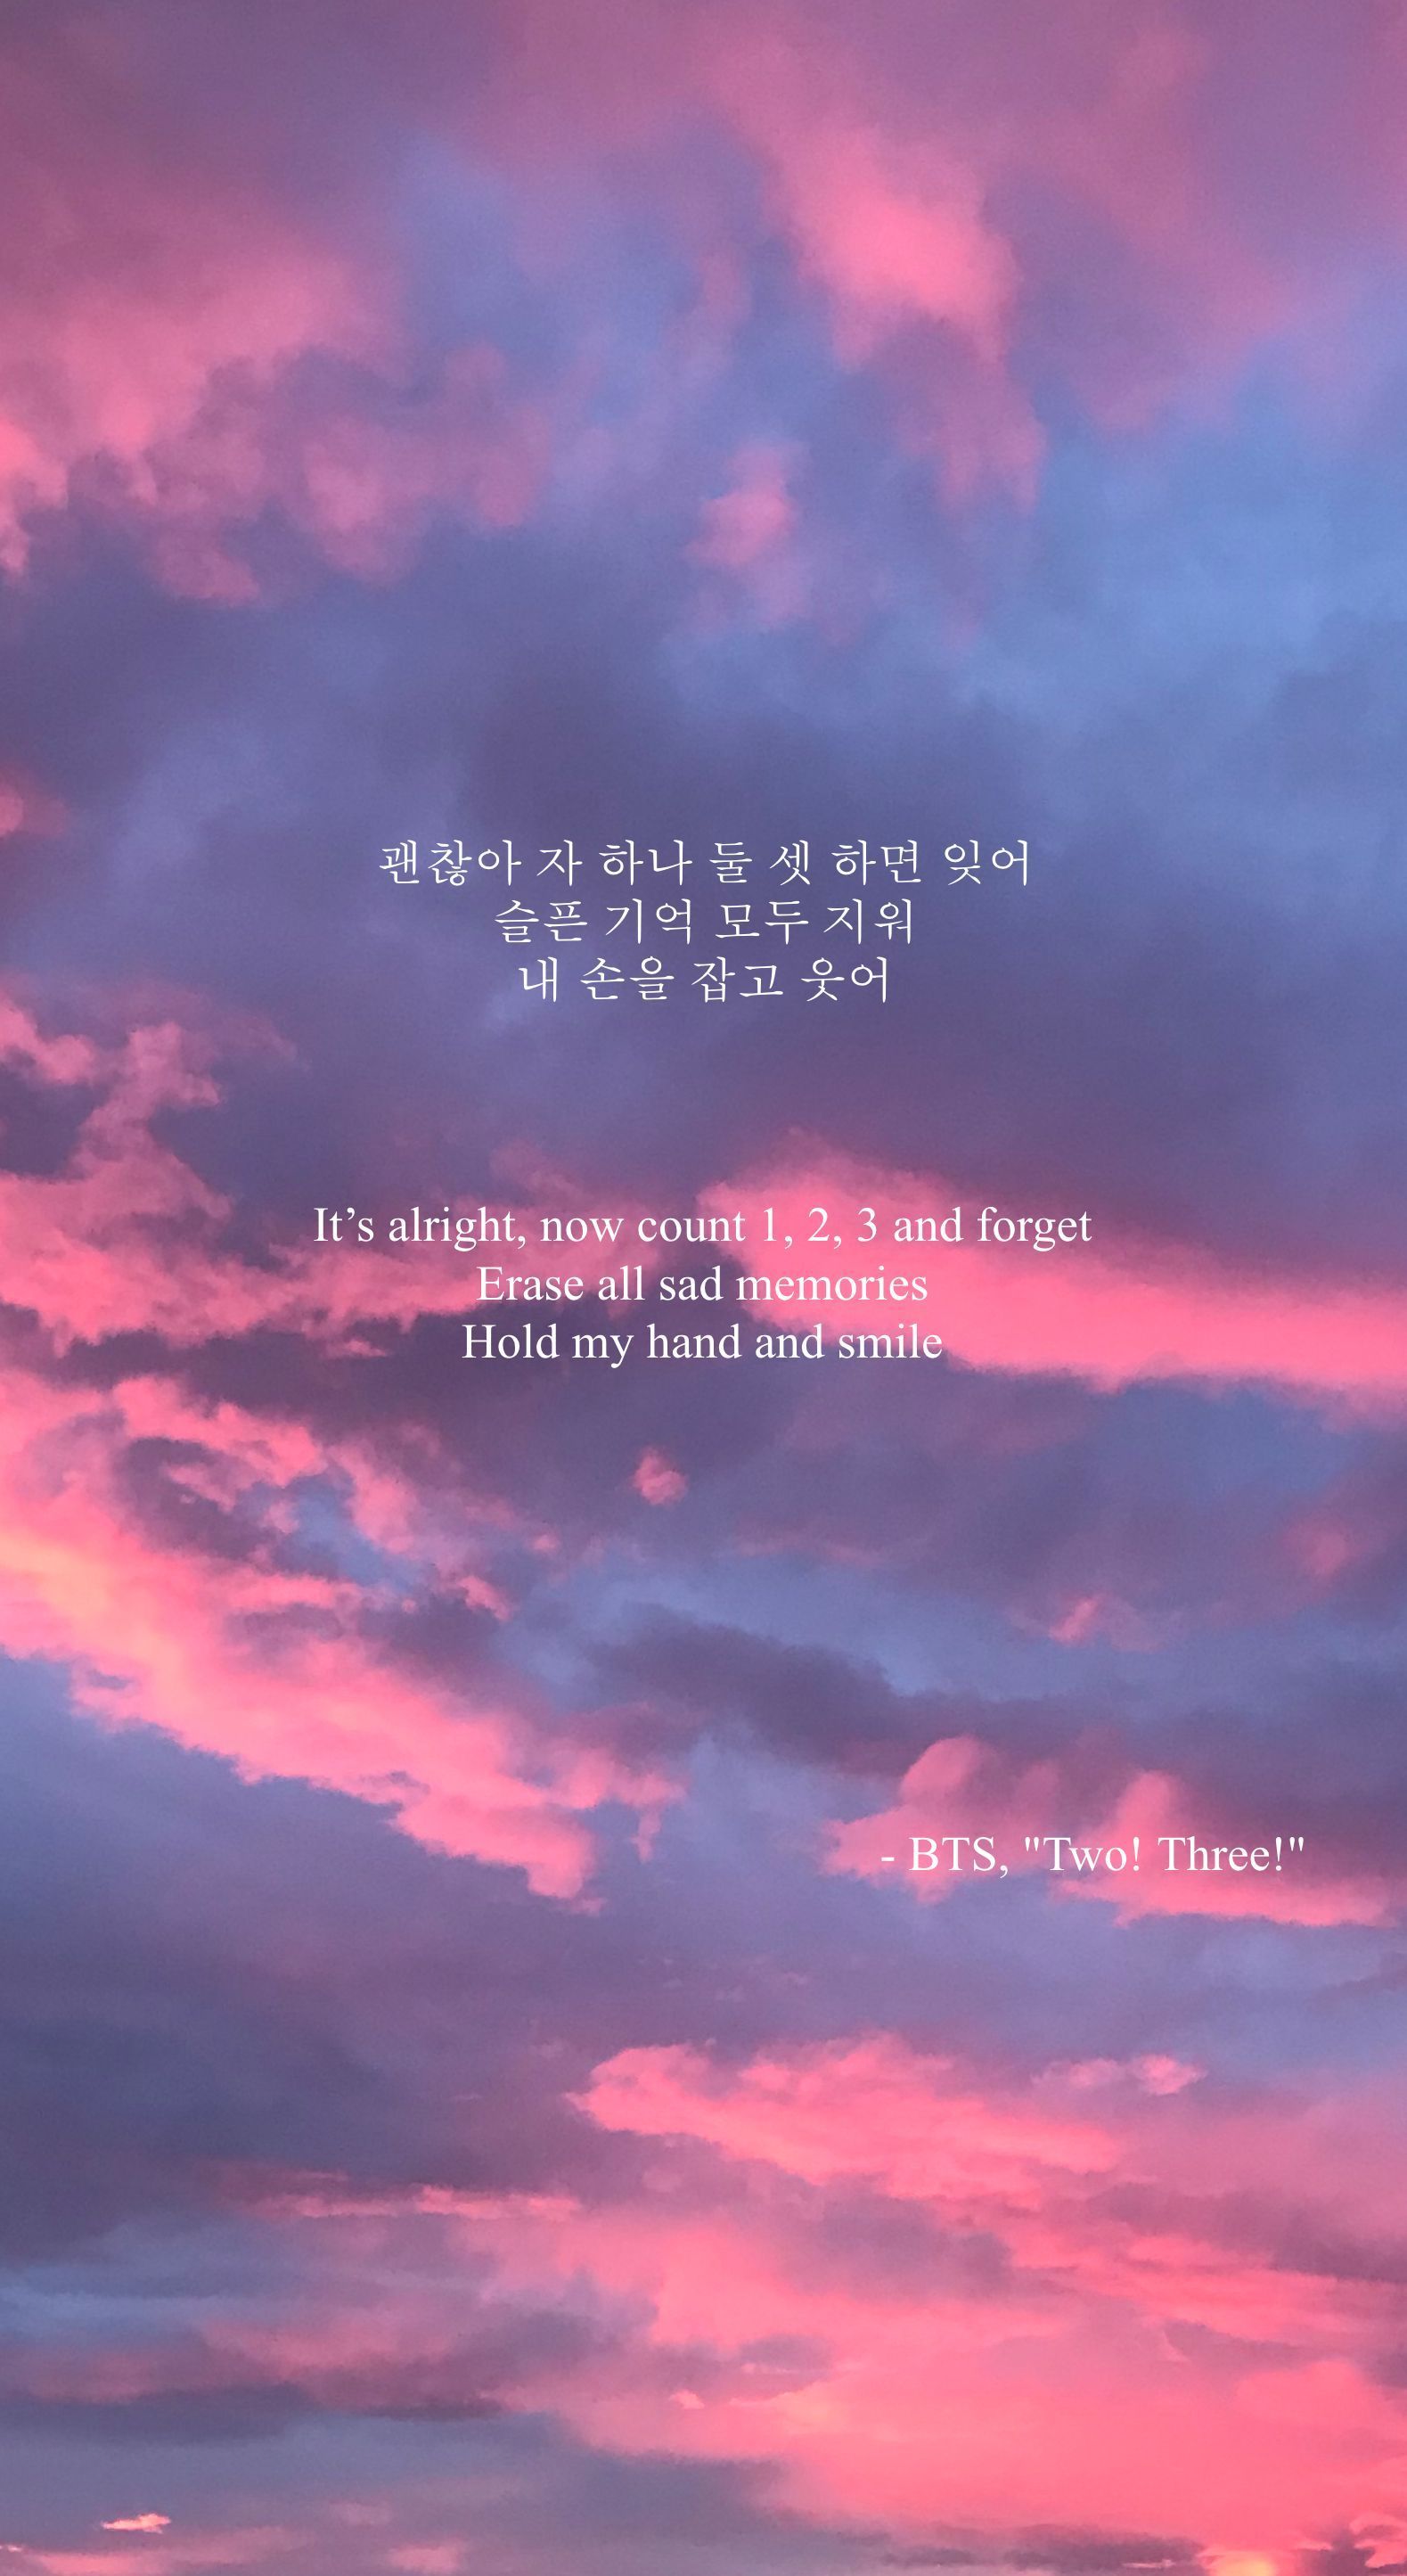 BTS Lyrics Wallpaper